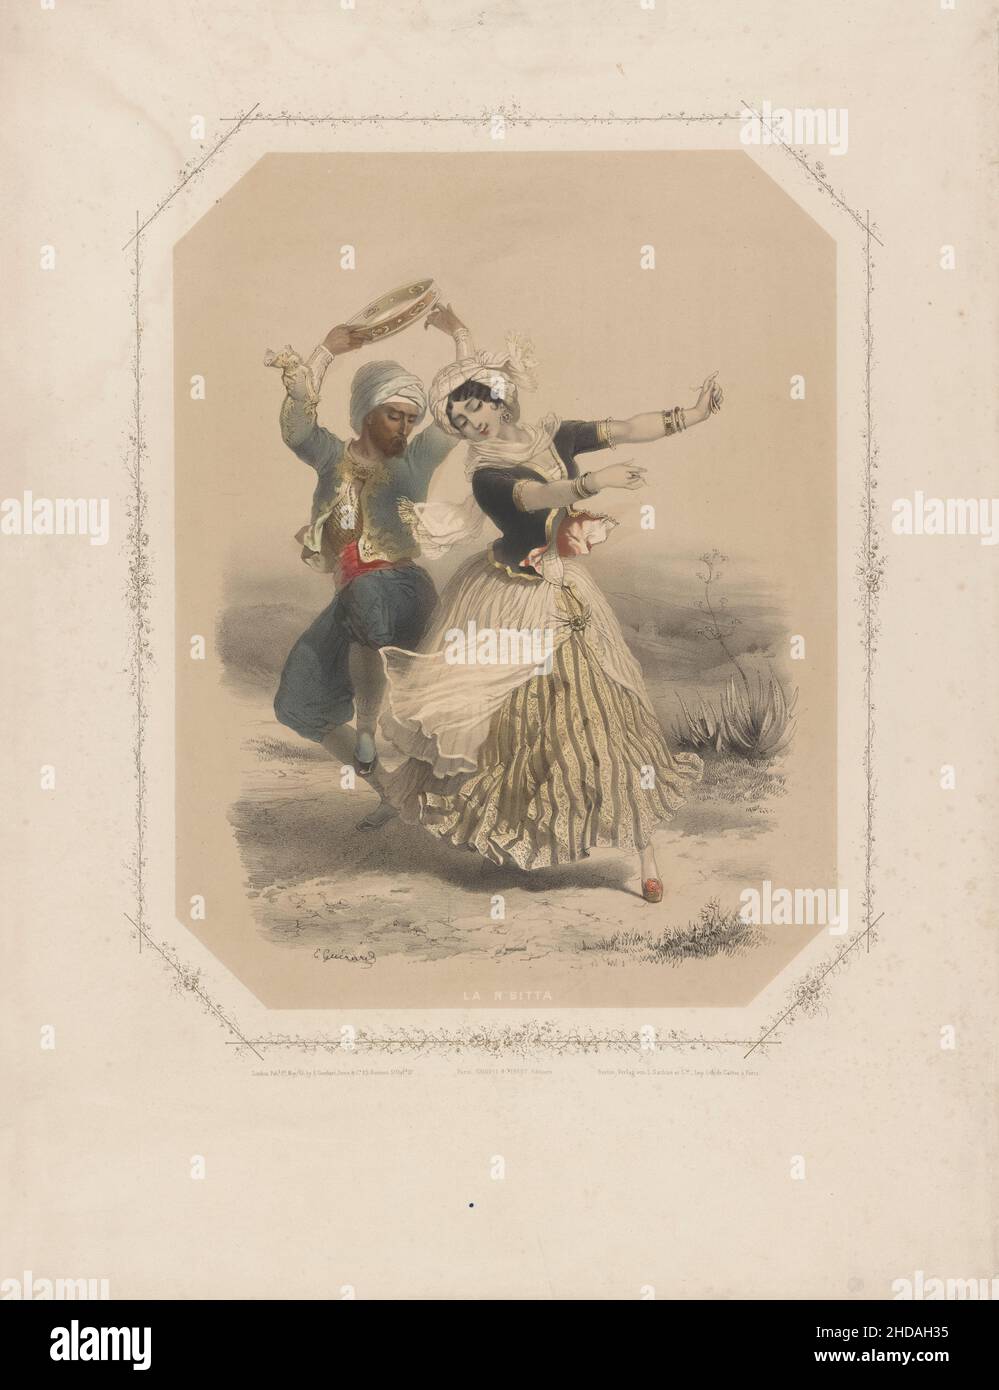 Lithographie de couleur ancienne représentant la danse folklorique turque.Empire ottoman. Banque D'Images